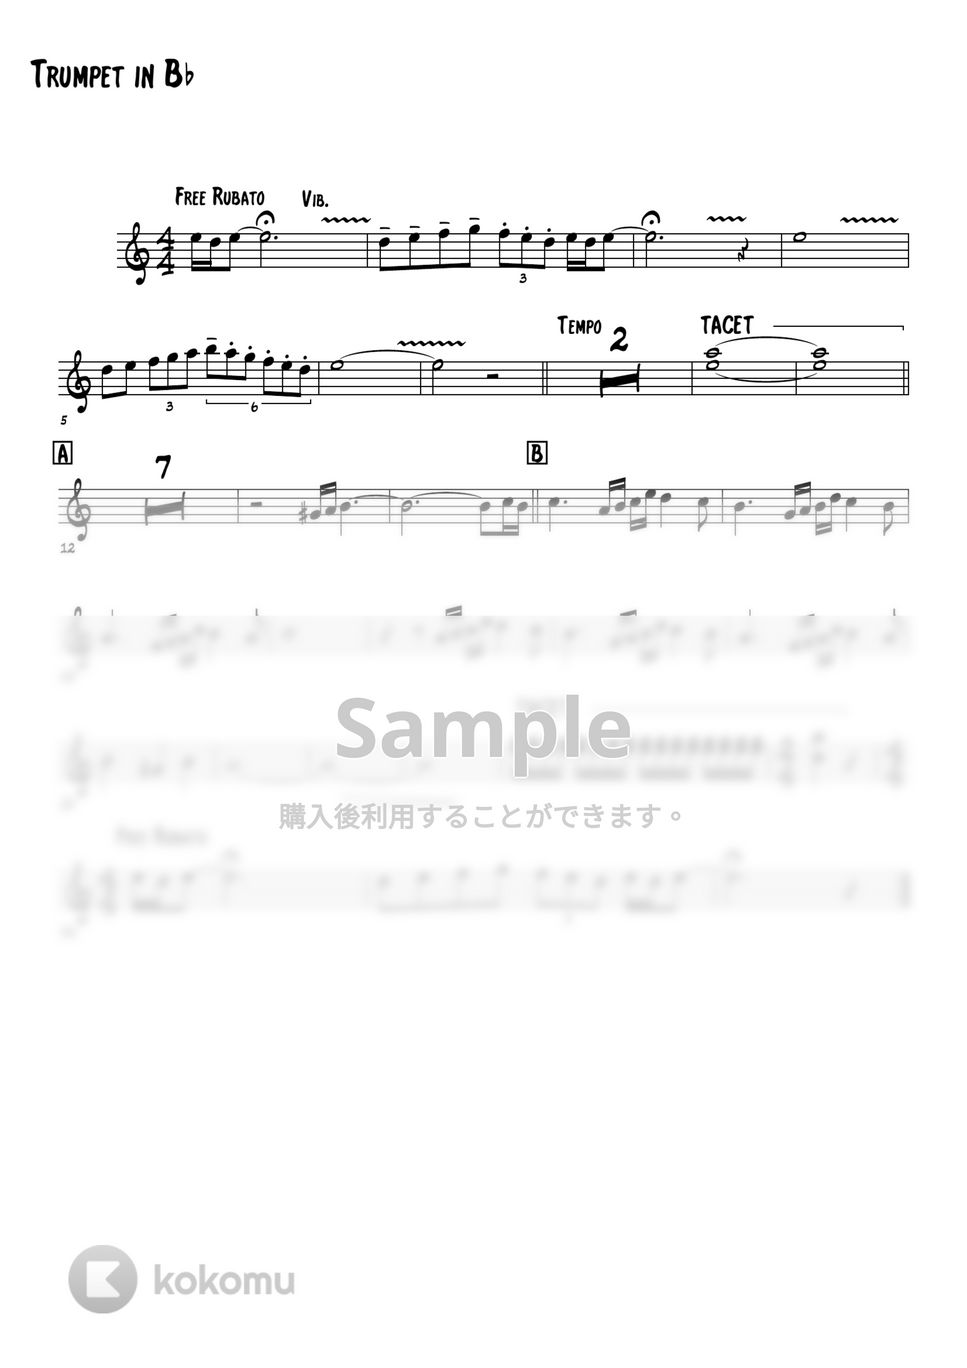 平尾昌晃 - 必殺仕掛人より (トランペット楽譜) by 高田将利